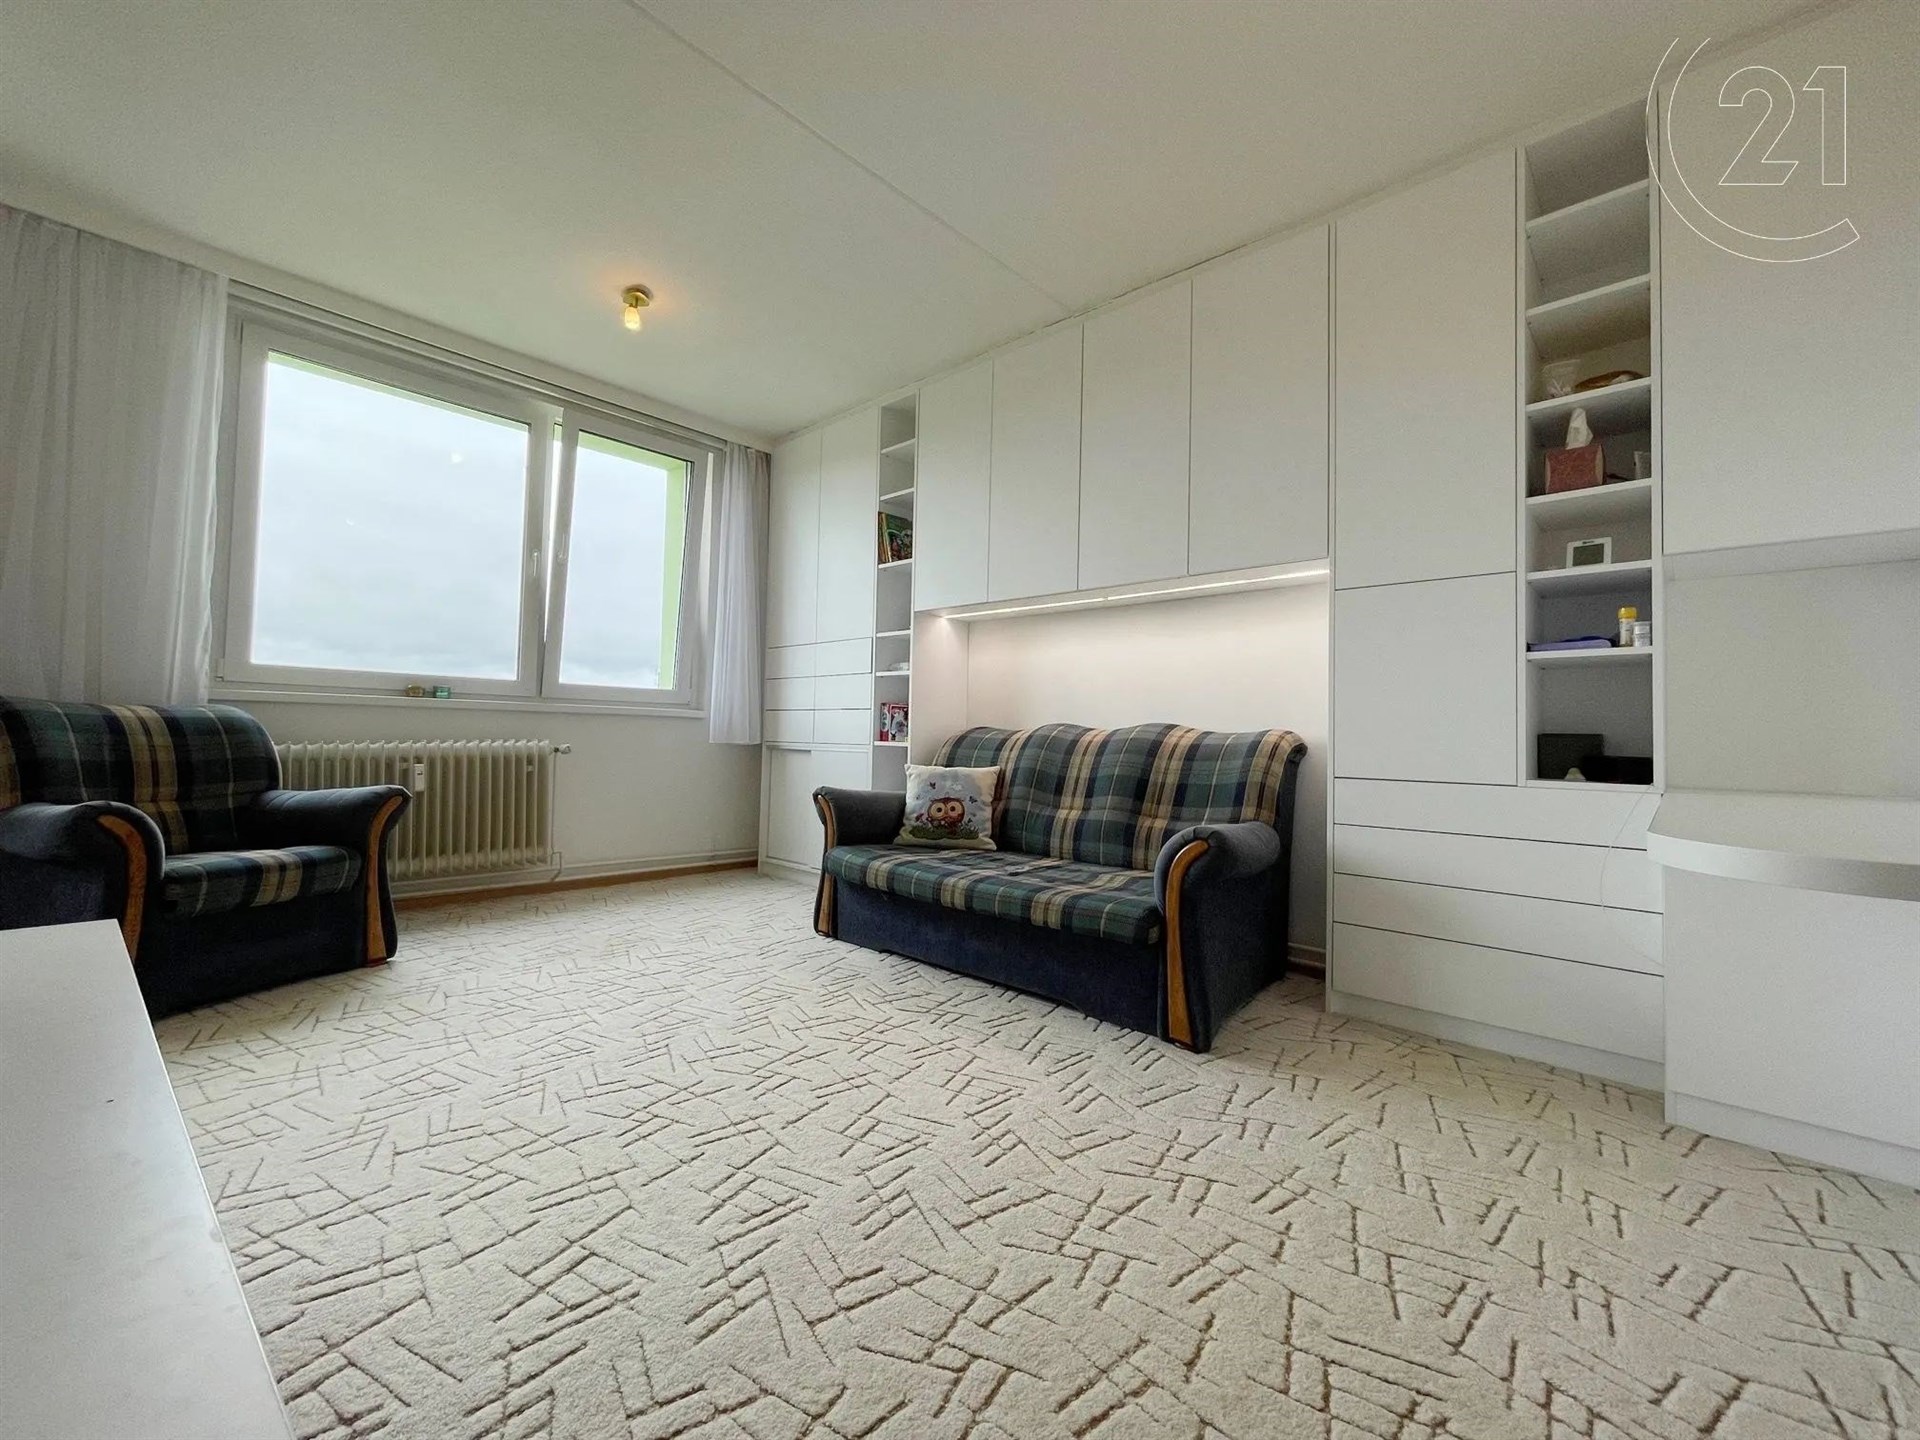 obývací pokoj s radiátor, koberec, přirozené světlo, a vestavěné v policích